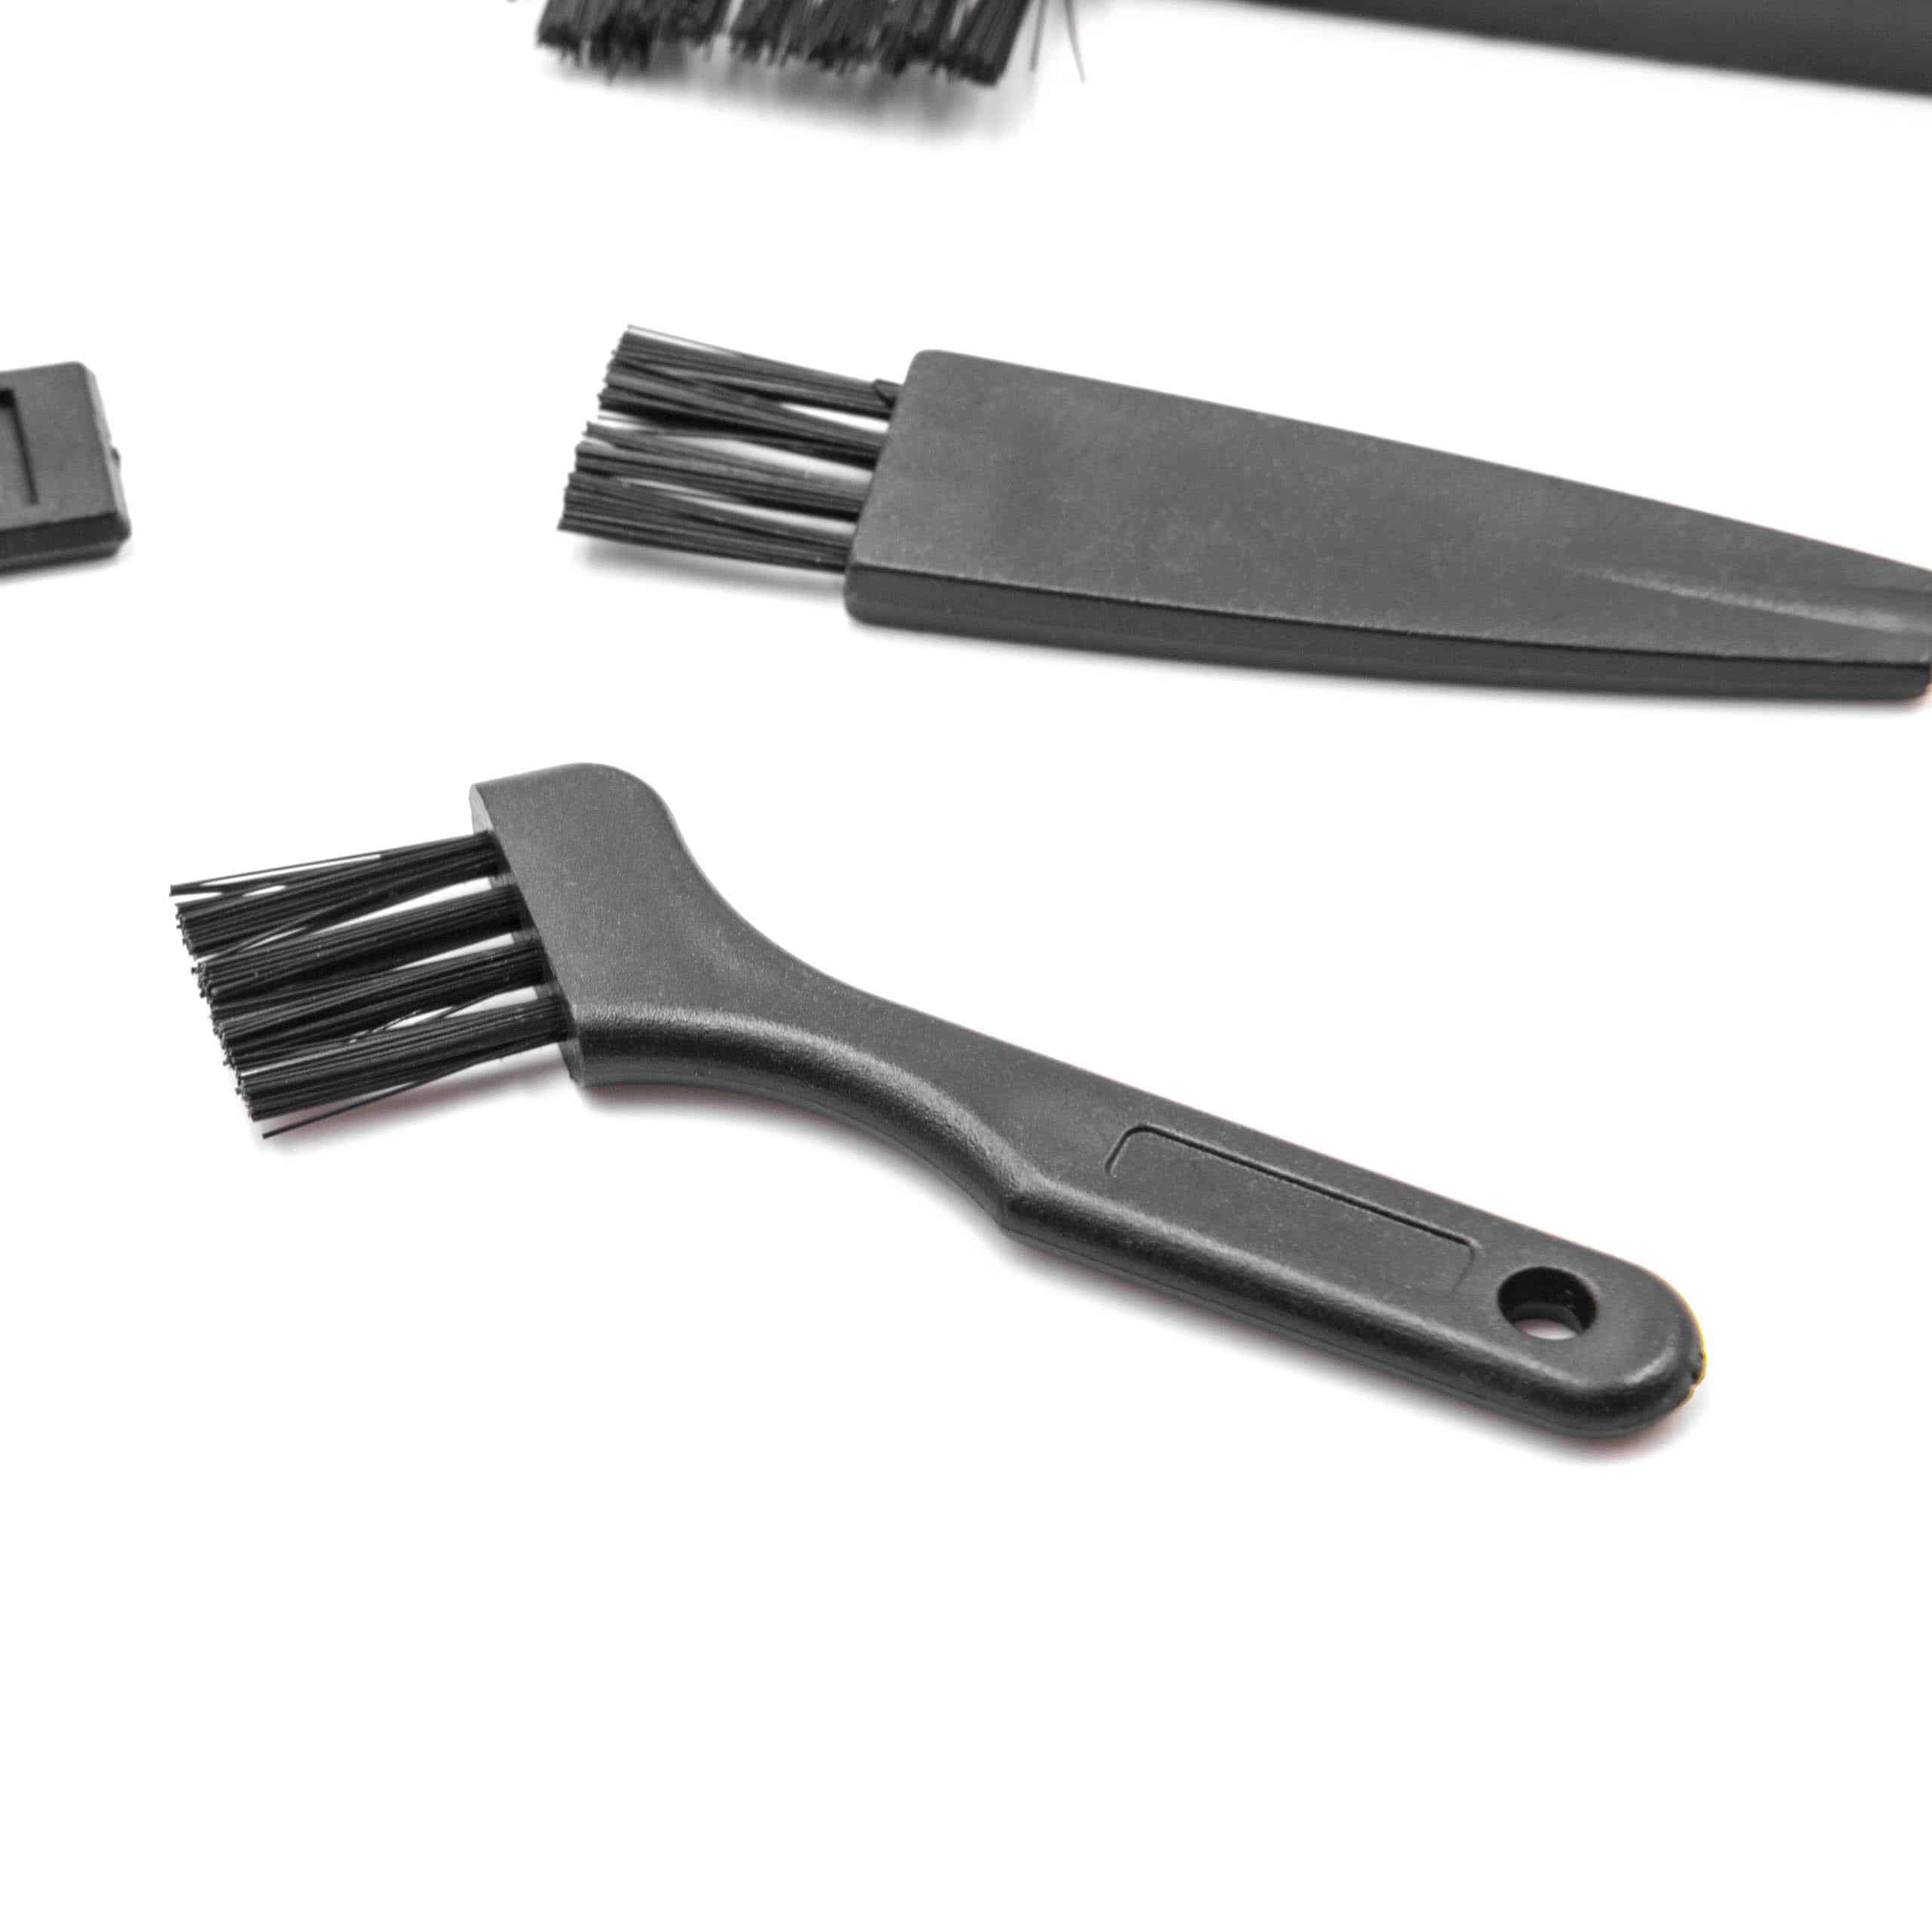 9x Reinigungsbürste für Elektrorasierer, Bartschneider, Haarschneider